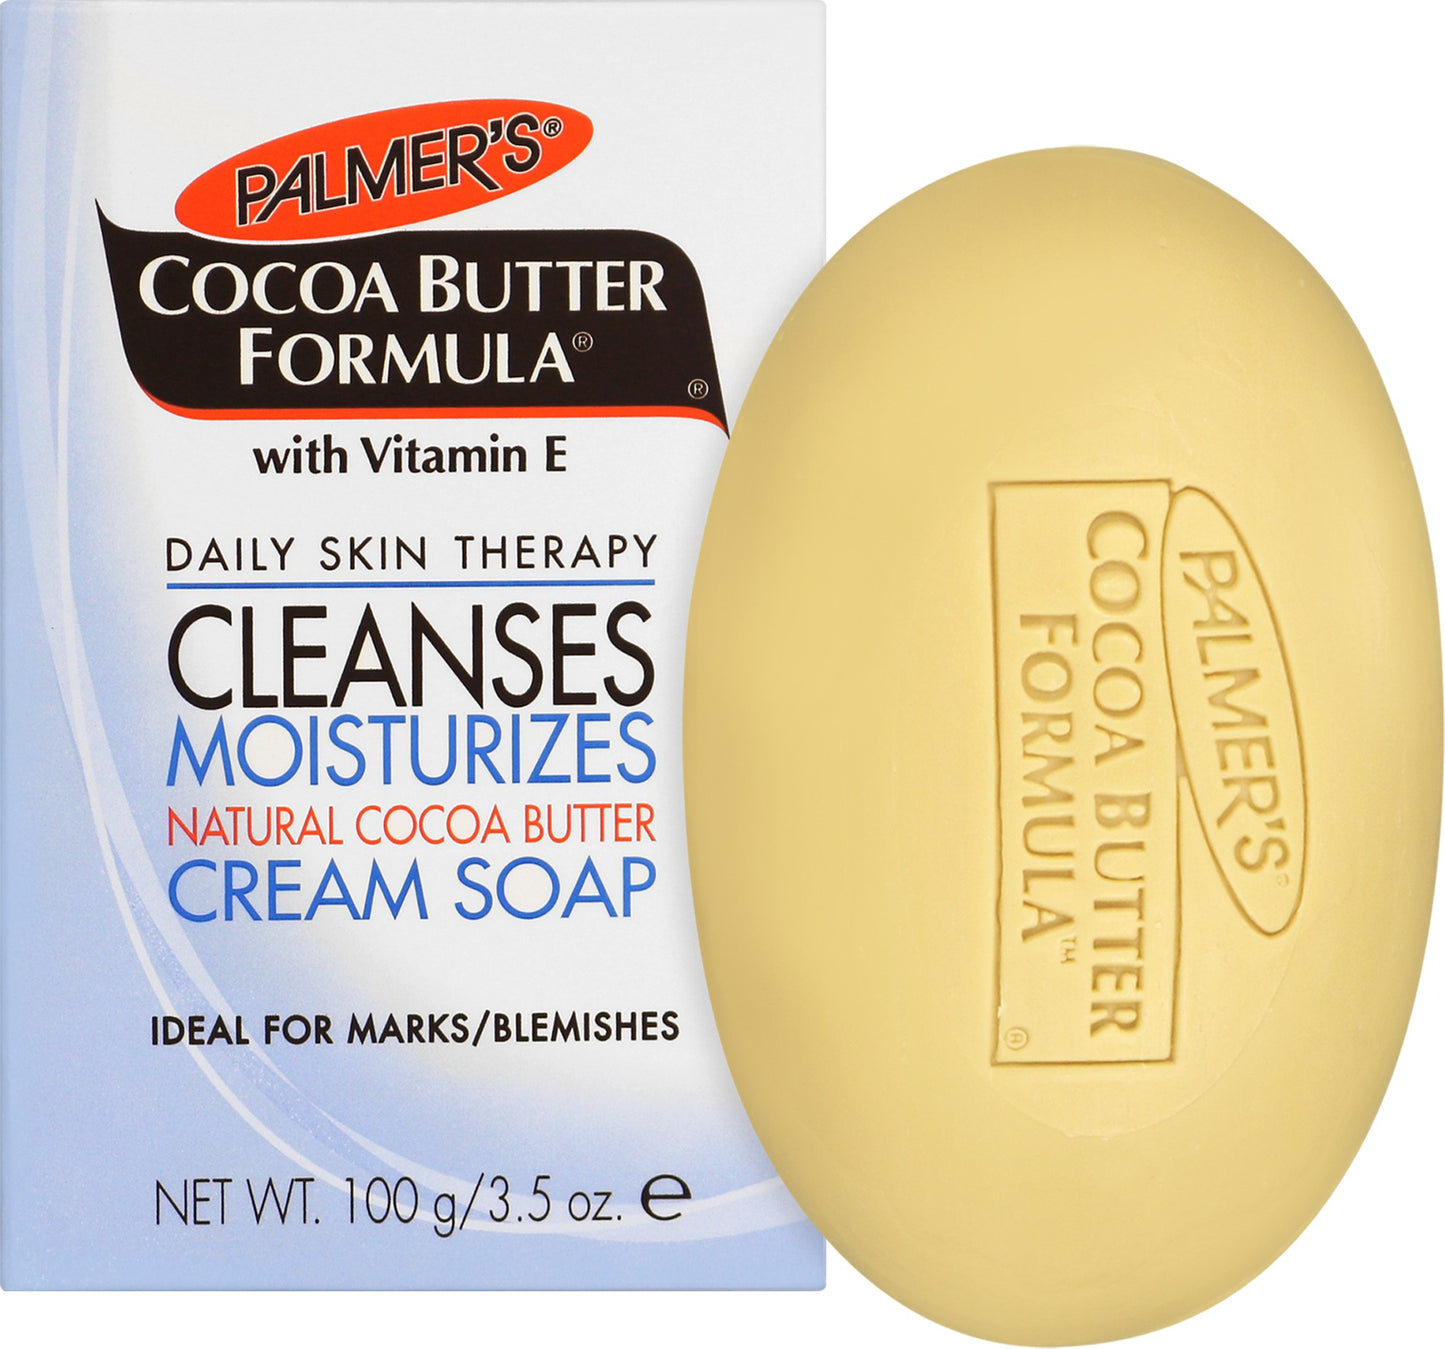 (COSMETICS SKIN CARE SOAP) Palmer's Cocoa Butter Formula Soap 3.5 oz.